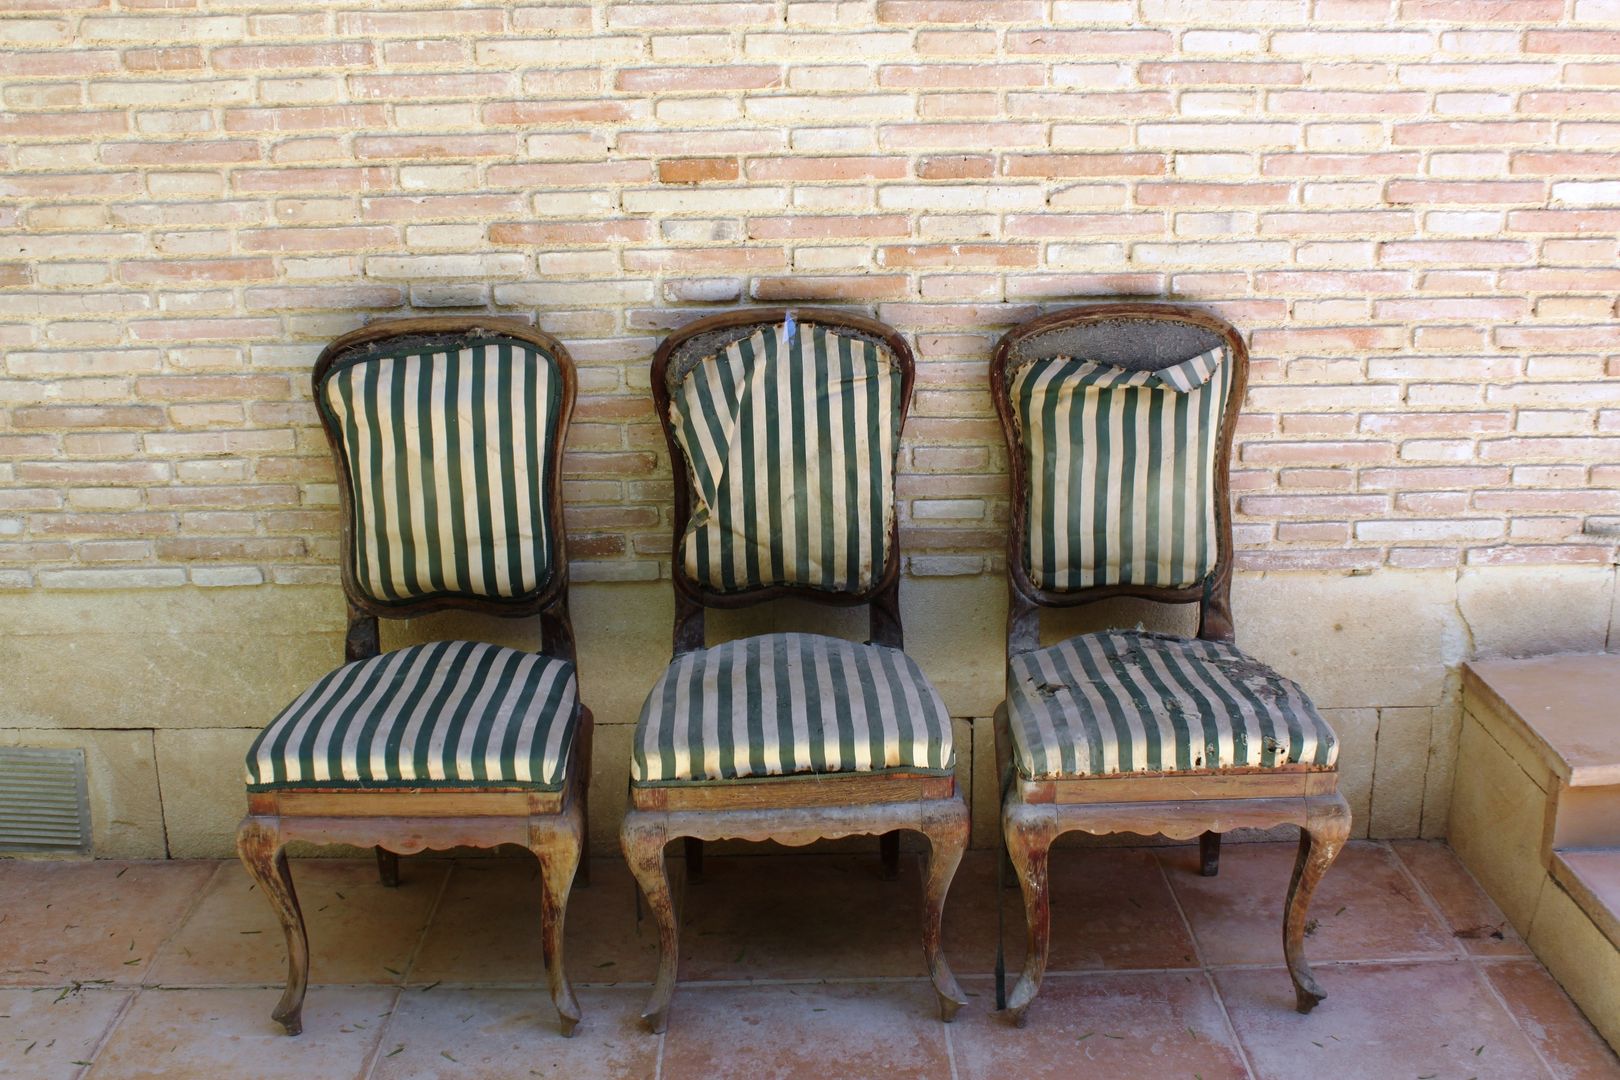 4 sillas isabelinas originales encontradas en un viejo trastero Dominique Restauración